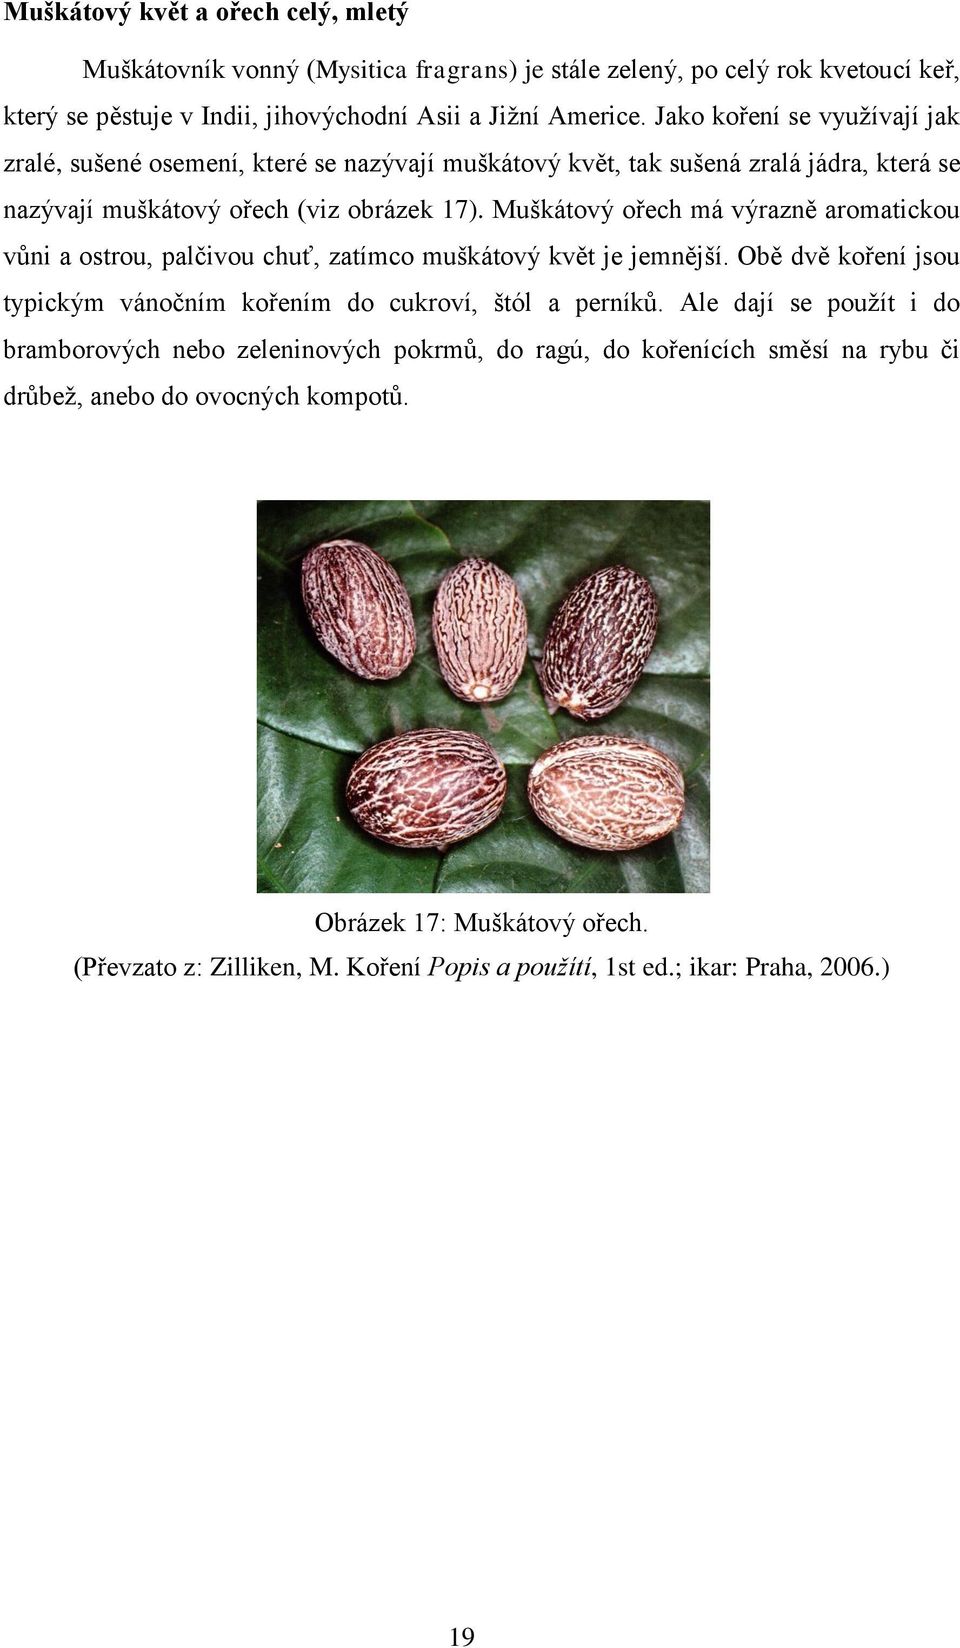 Muškátový ořech má výrazně aromatickou vůni a ostrou, palčivou chuť, zatímco muškátový květ je jemnější.